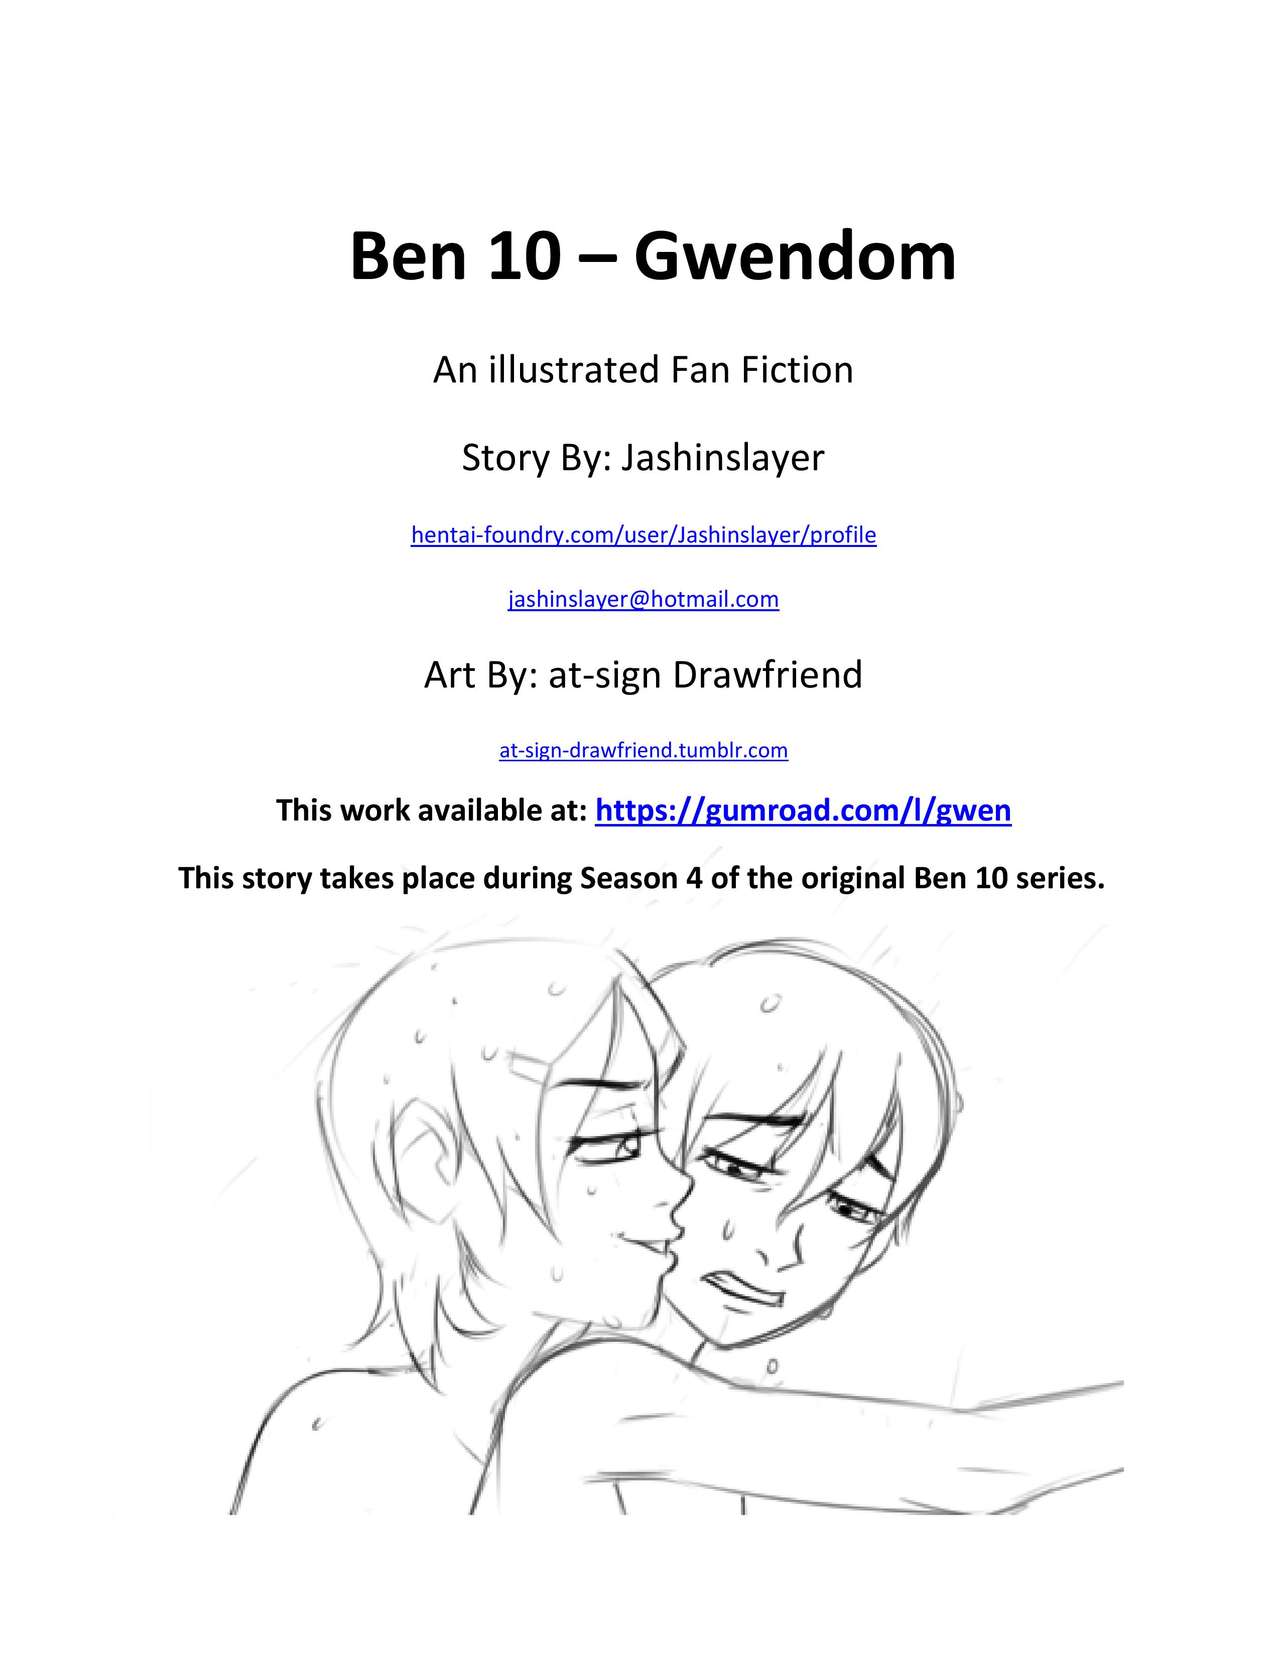 Ben 10 Porn Tumblr - Ben 10 Gwendom - Page 2 - HentaiEra